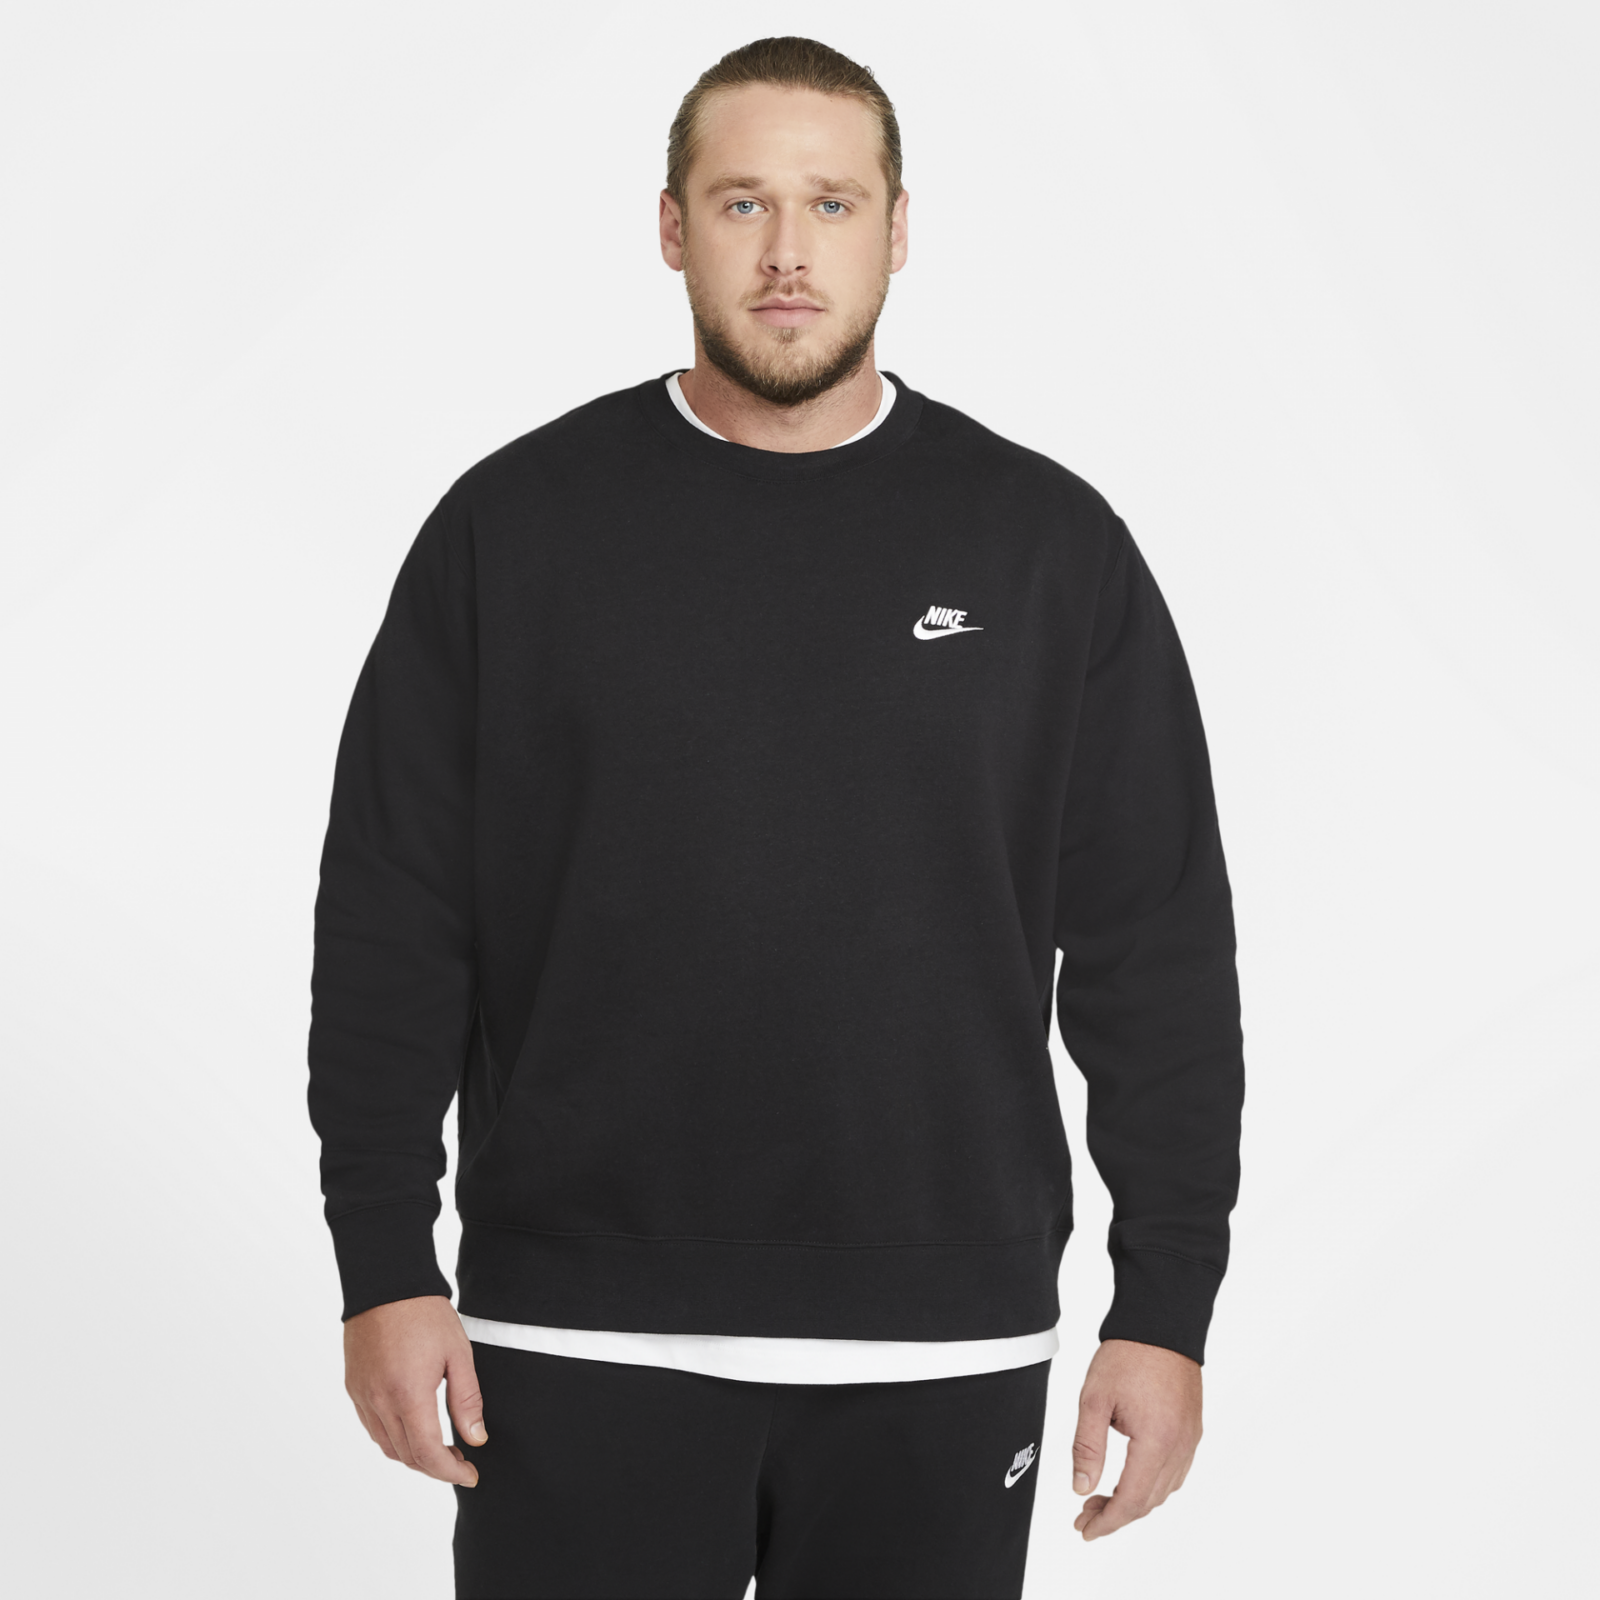 Nike Man's Sweatshirt Club